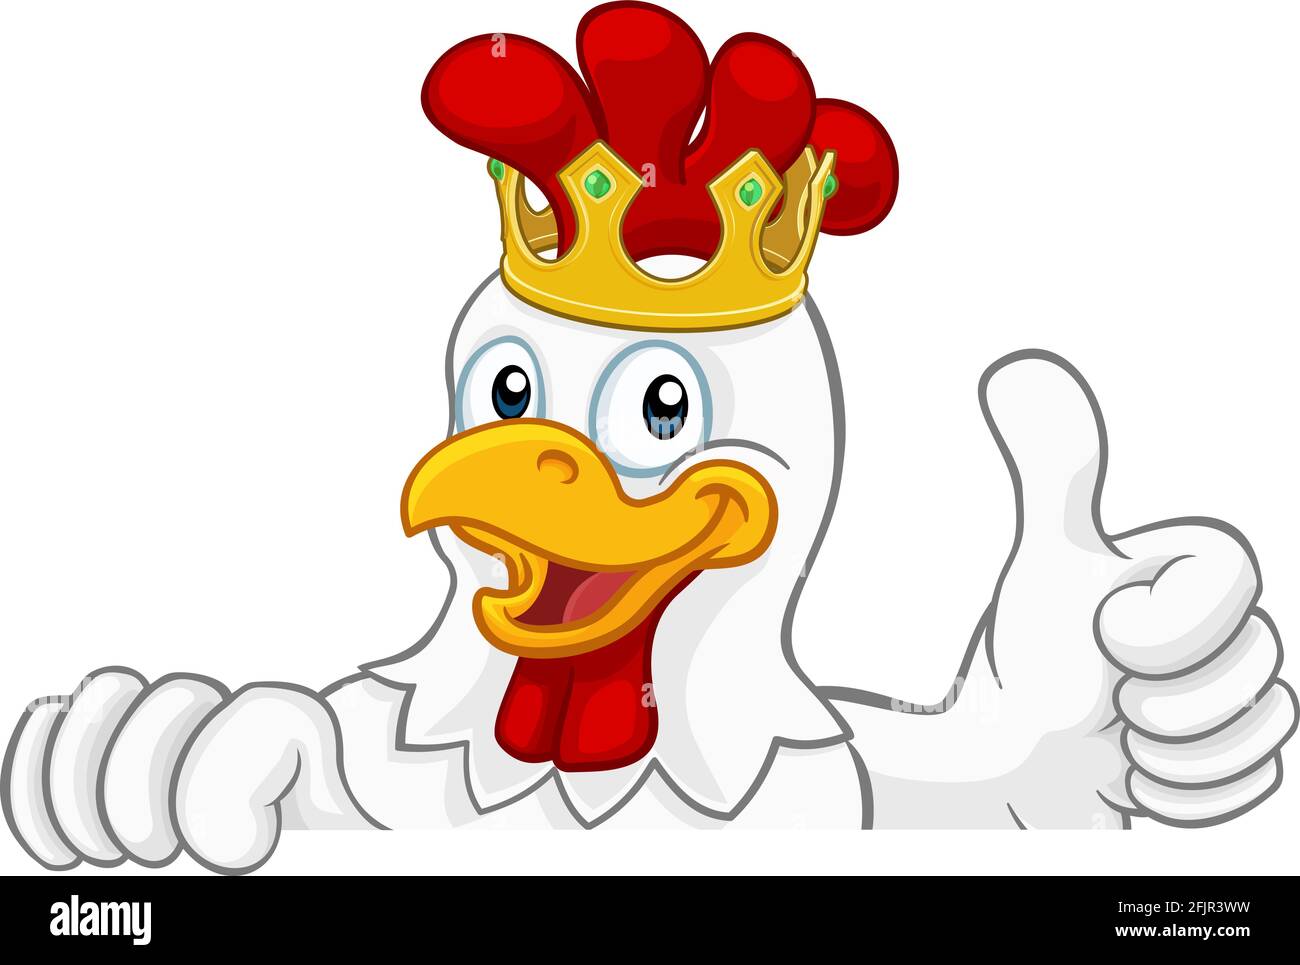 King Chicken Rooster Cockerel Bird Crown Cartoon Stock Vector Image & Art -  Alamy